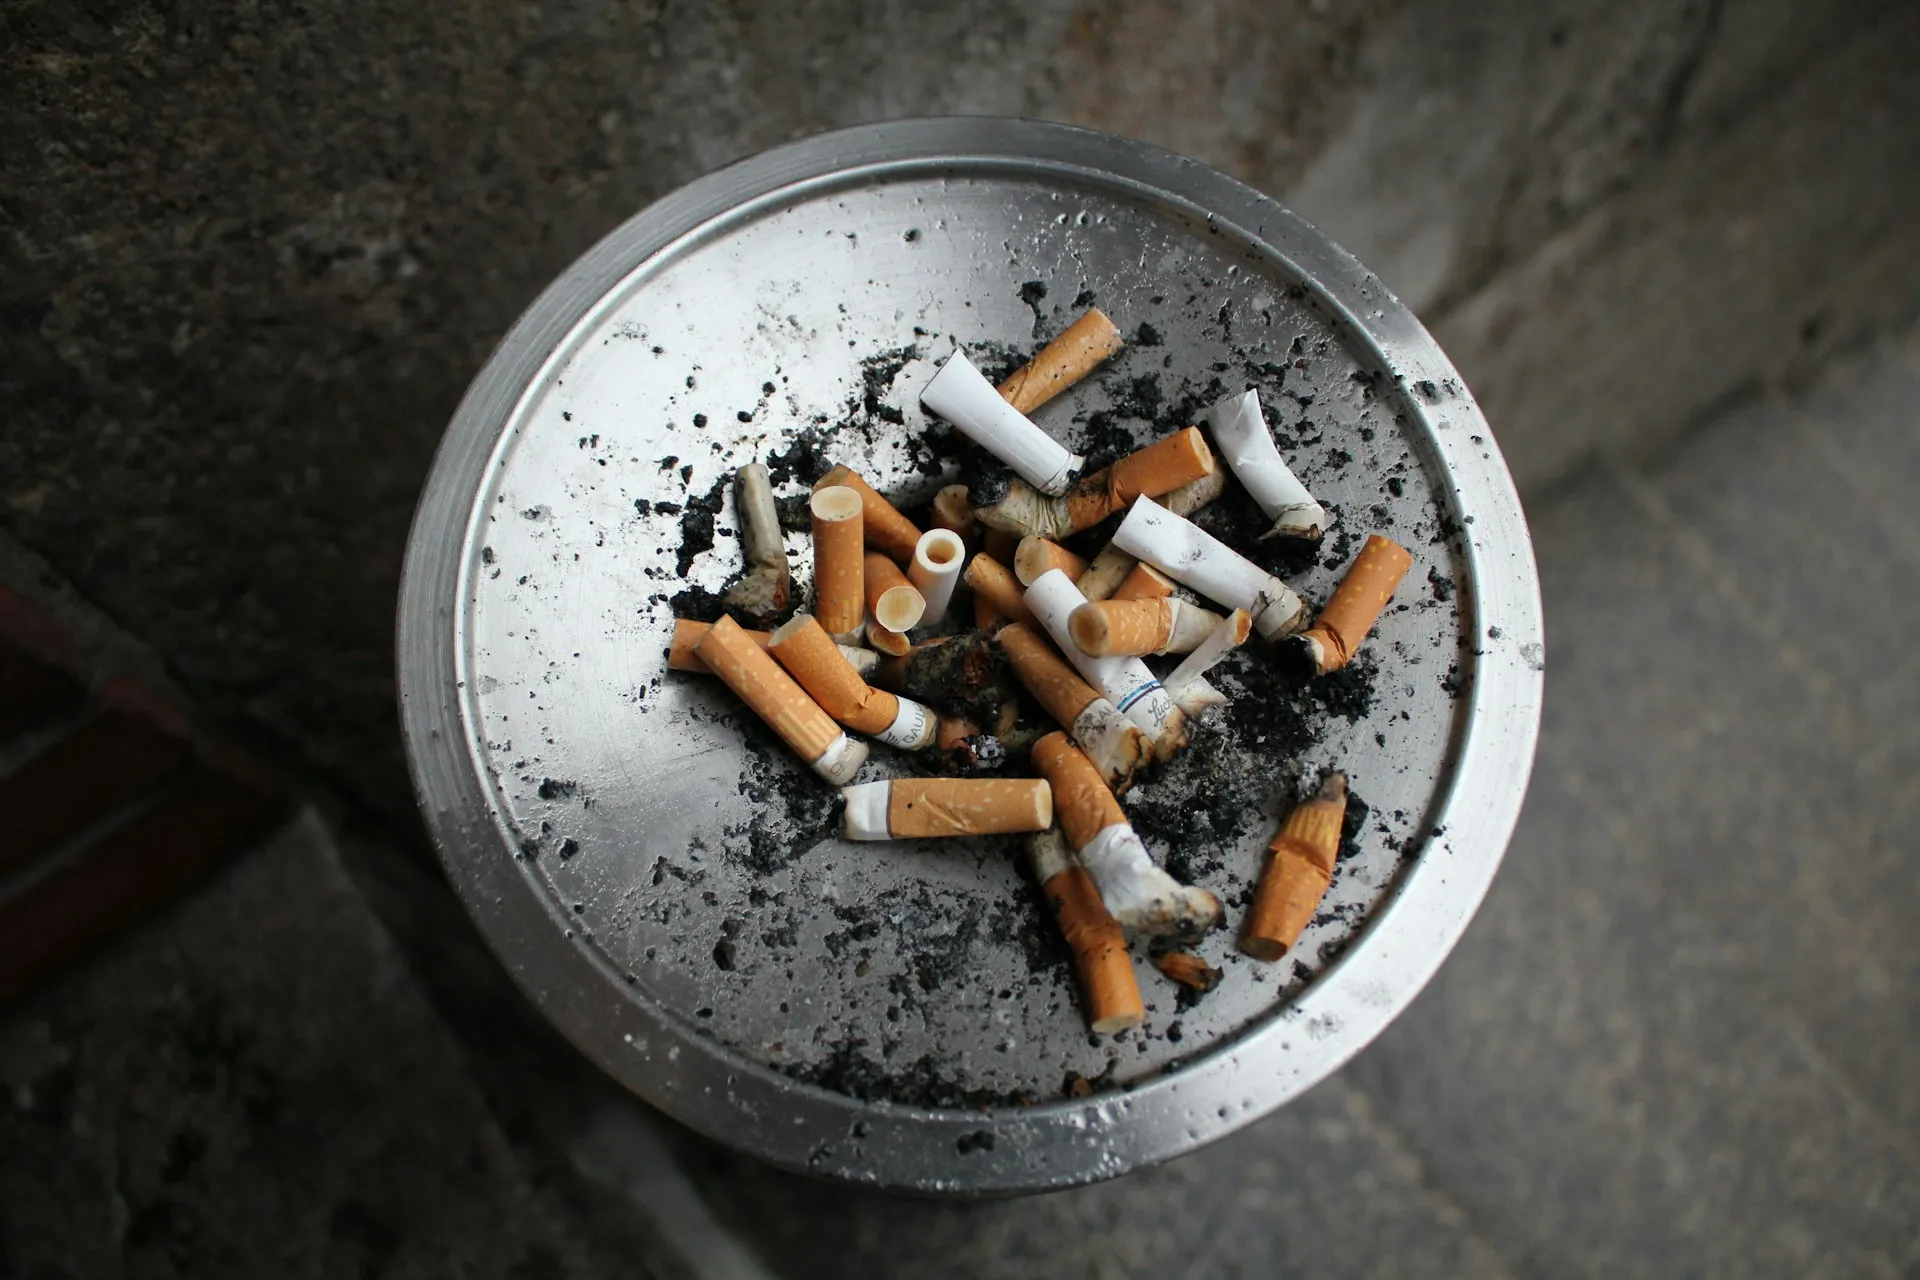 Nicotina é a droga que mais causa dependência química, alerta especialista em tabagismo